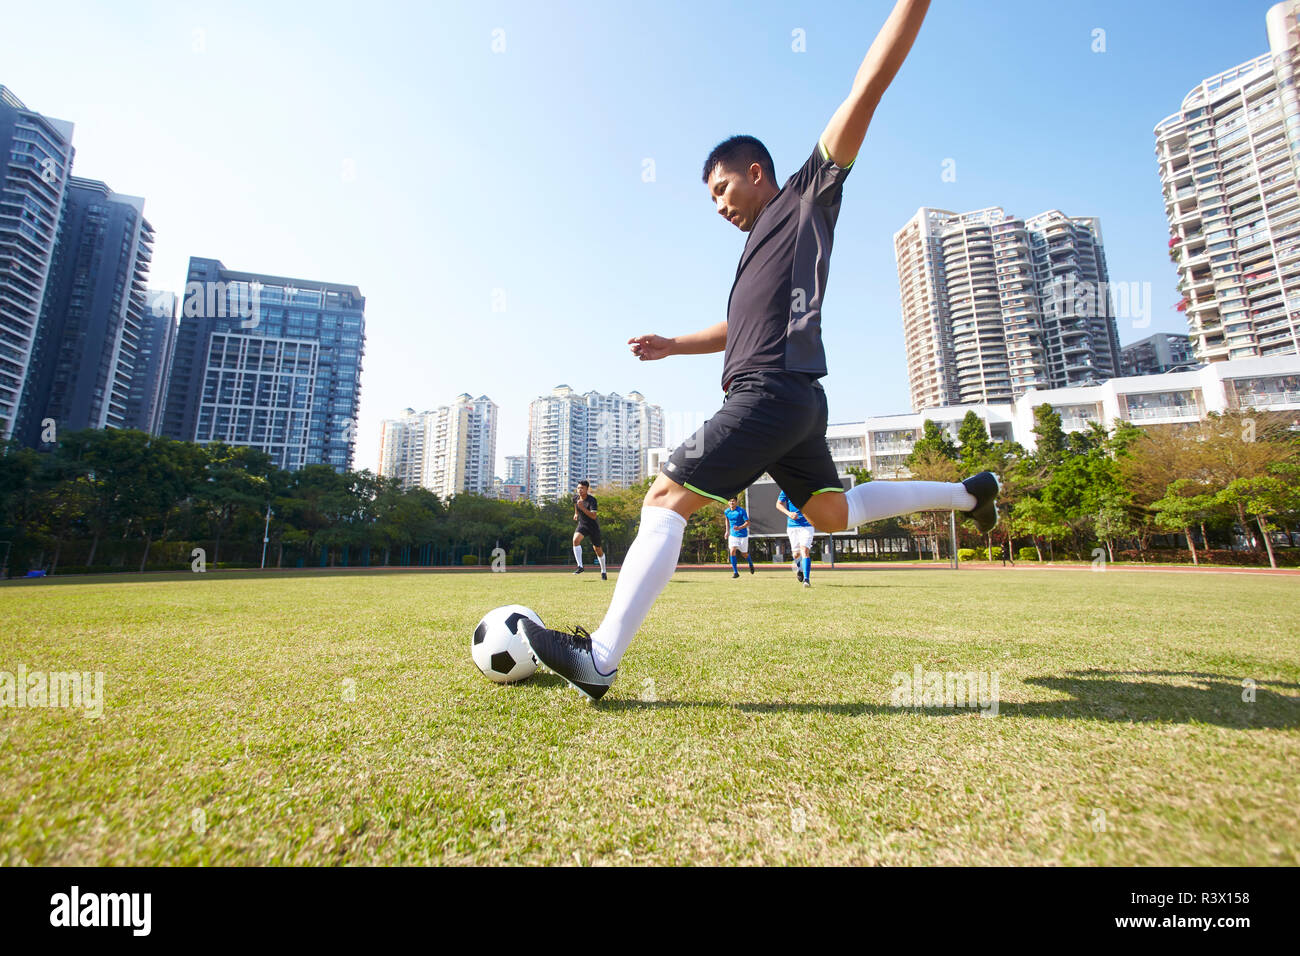 Jeune asiatique de football soccer player le tir de la balle au cours de match Banque D'Images